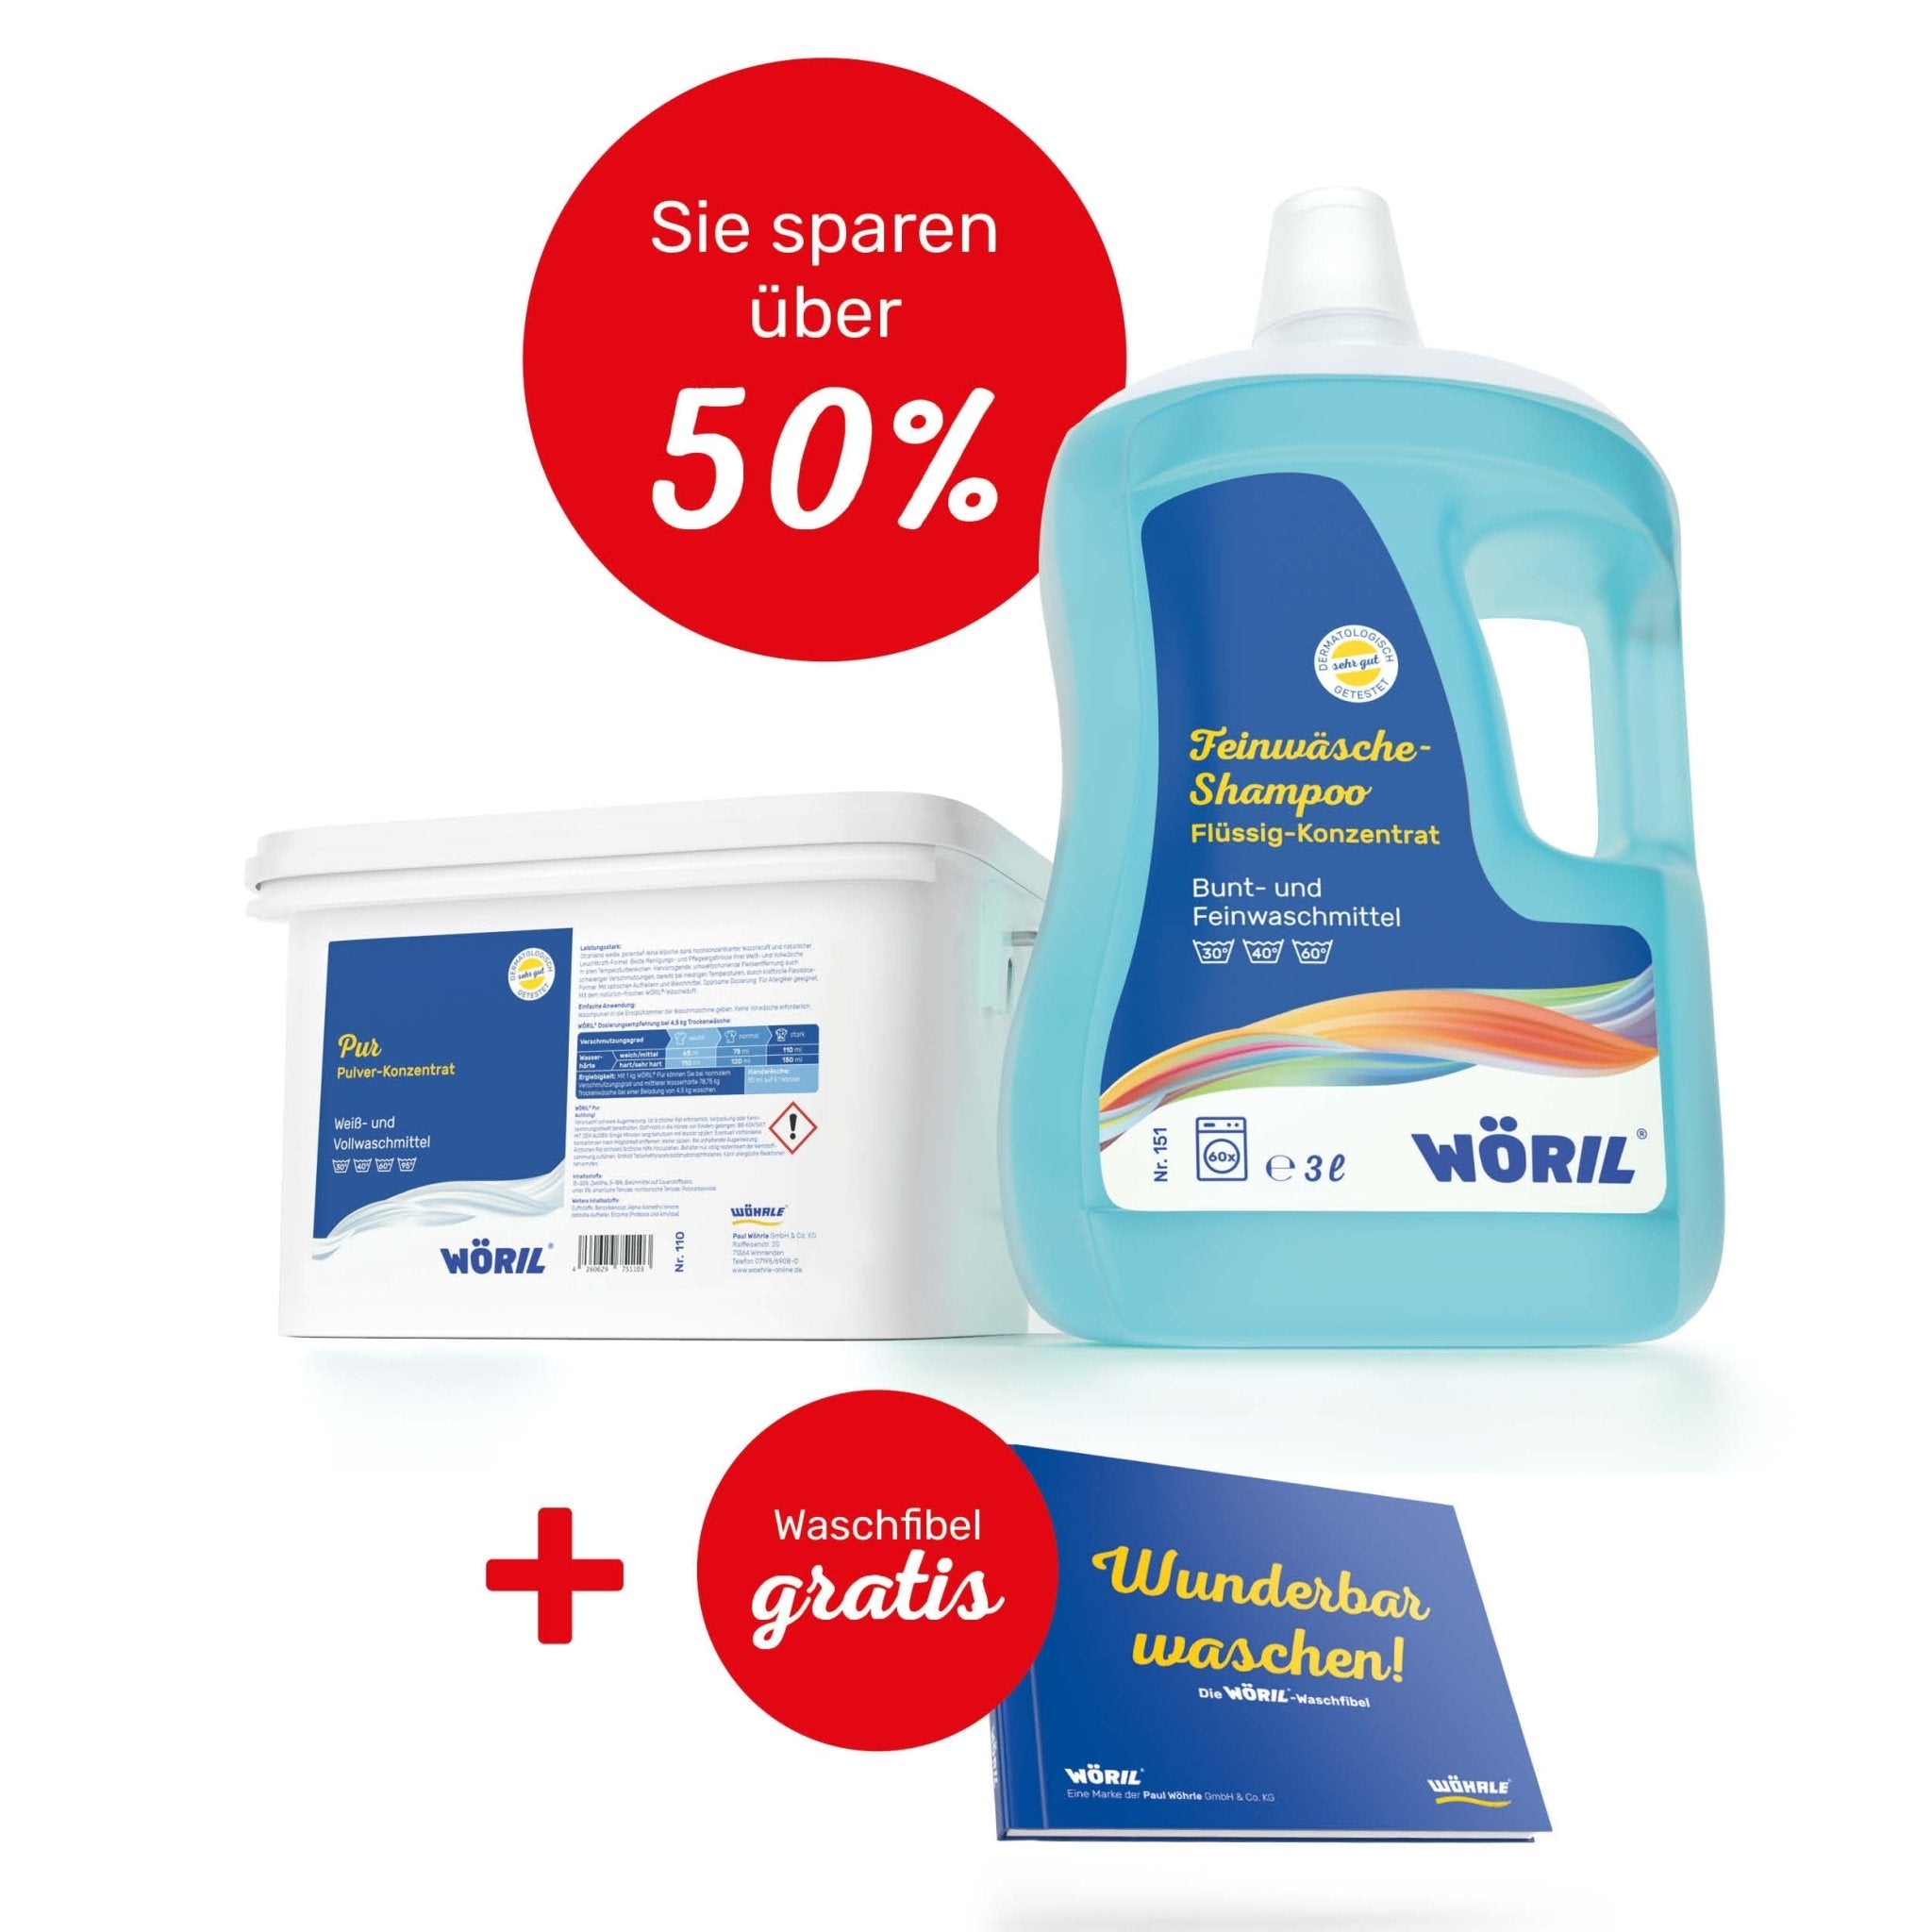 Waschmittel-Testpaket - Wöhrle - S' Beschde für dahoim!